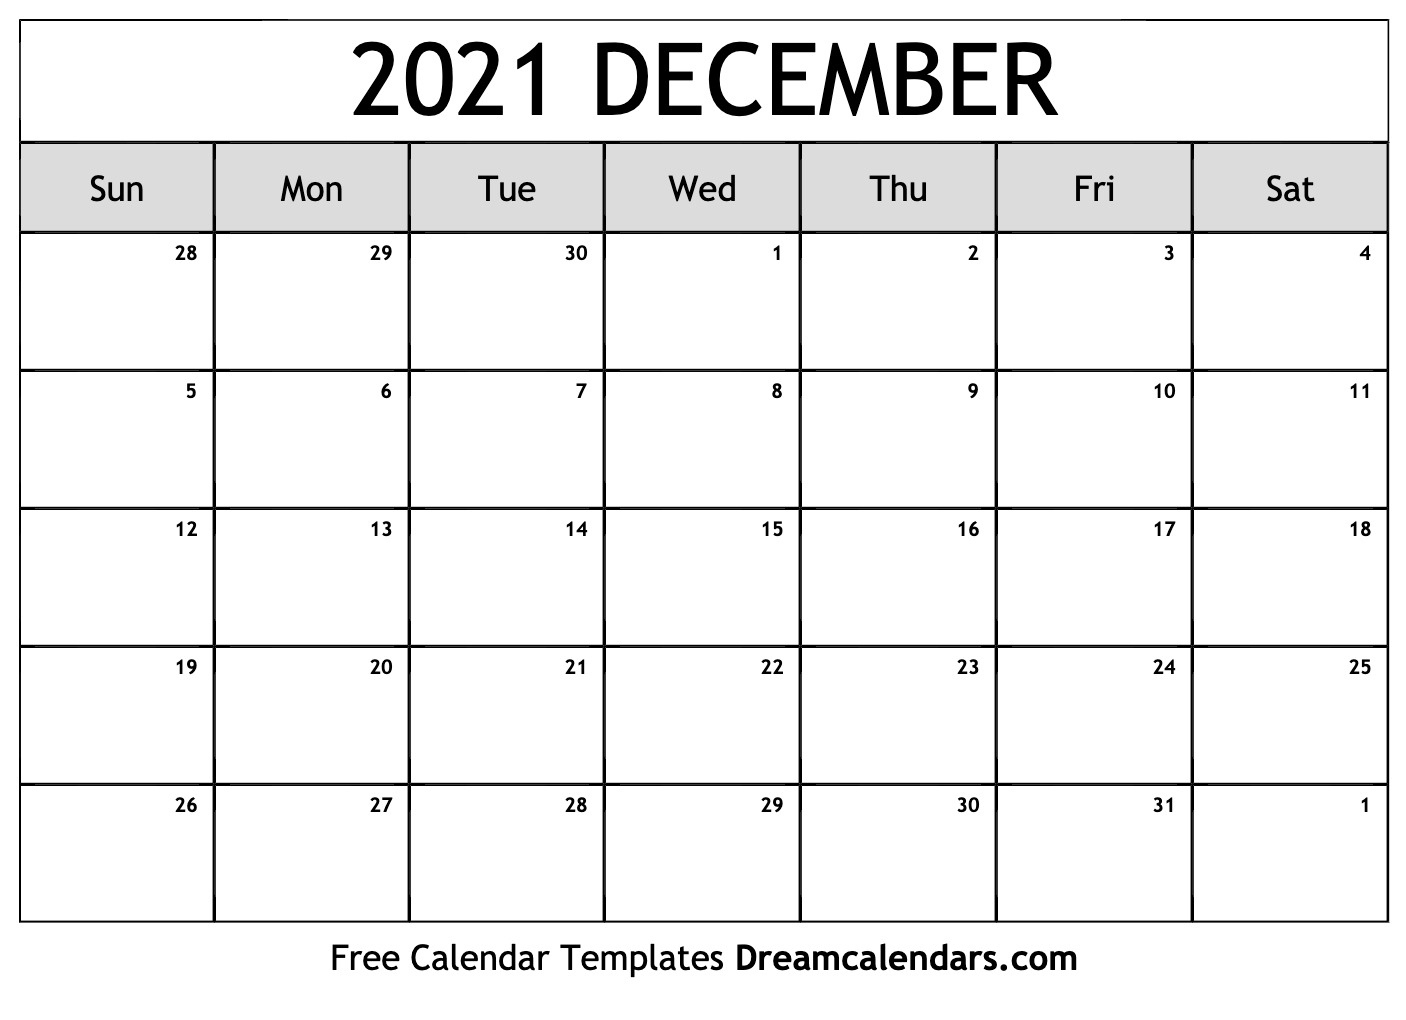 December 2021 Calendar Printable | Example Calendar Printable December 2021 Calendar Virus